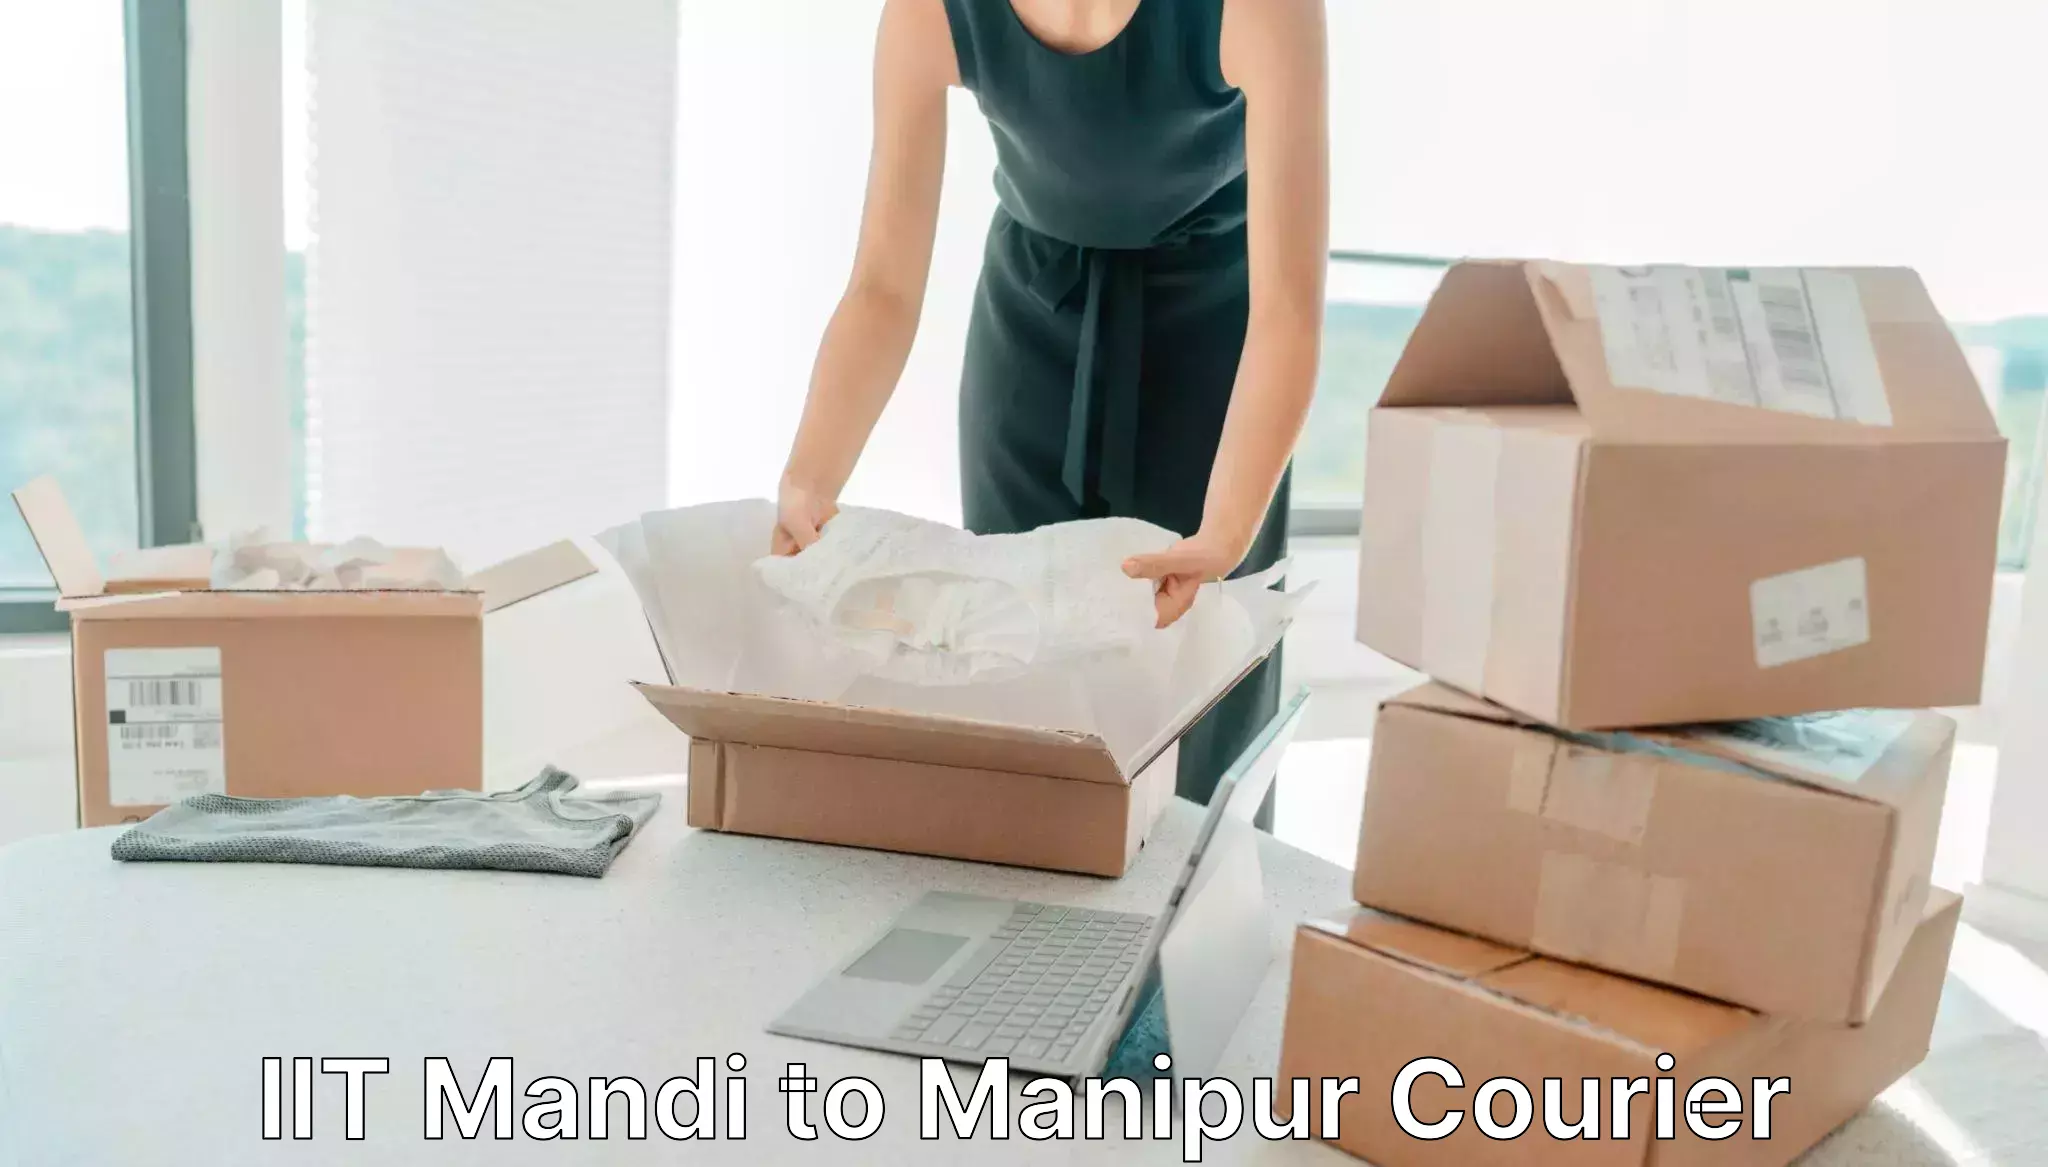 Digital courier platforms in IIT Mandi to Kanti